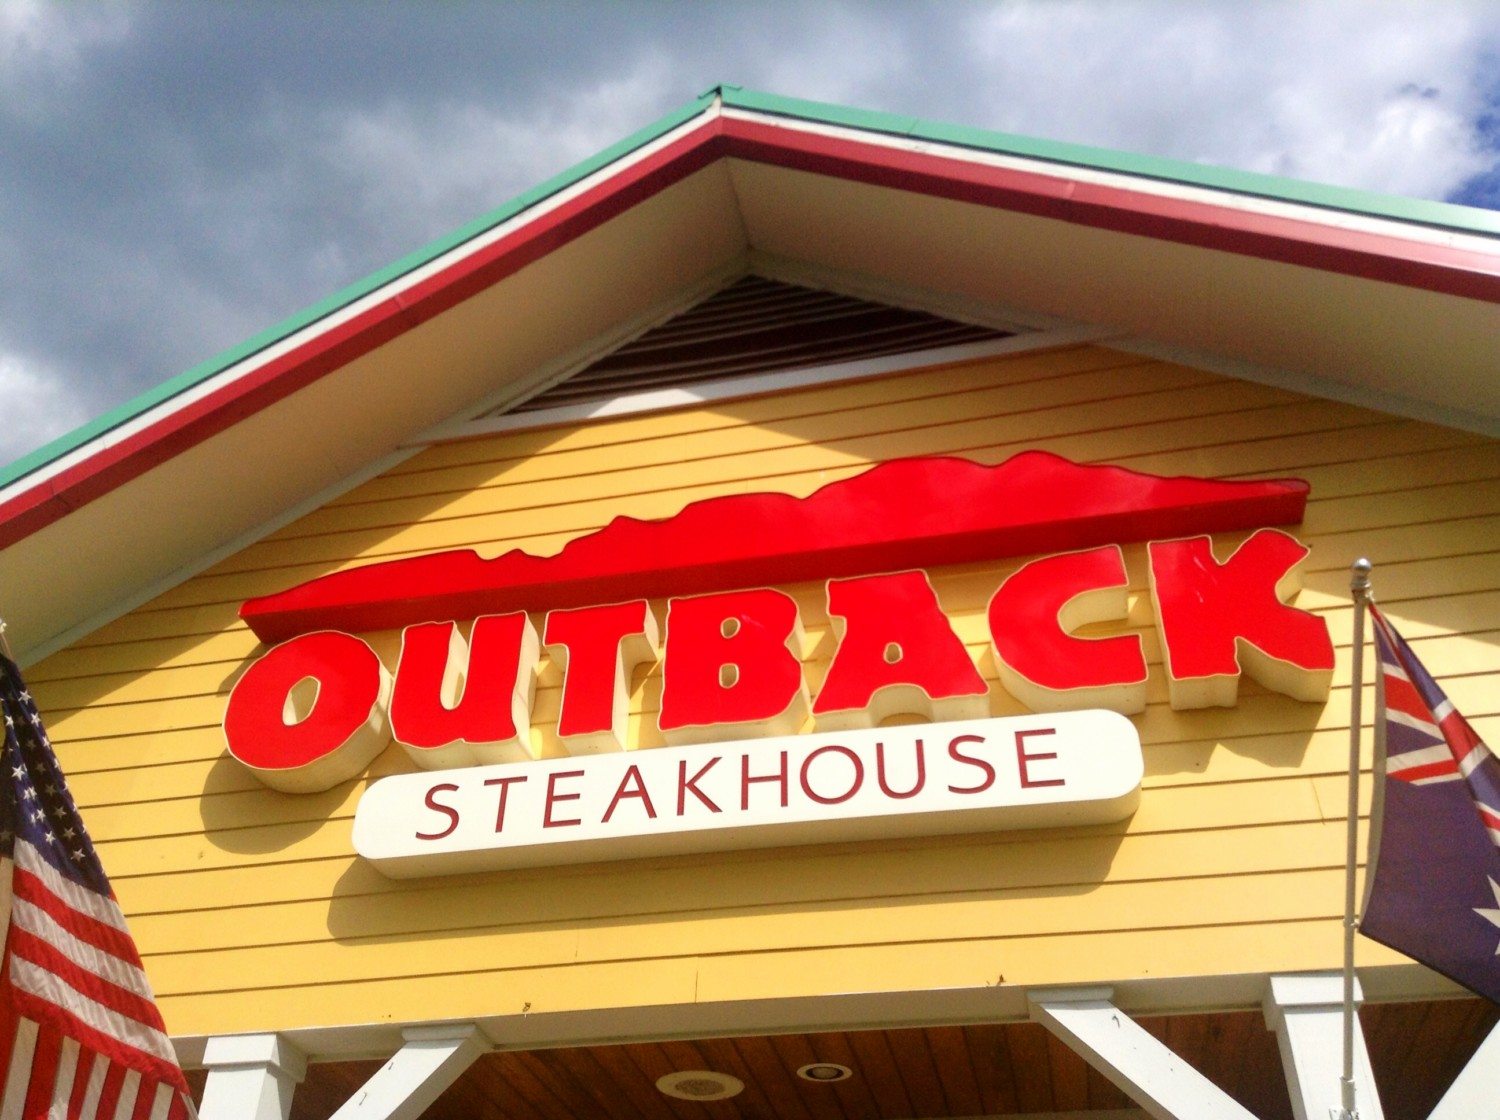 Outback Steakhouse Restaurant